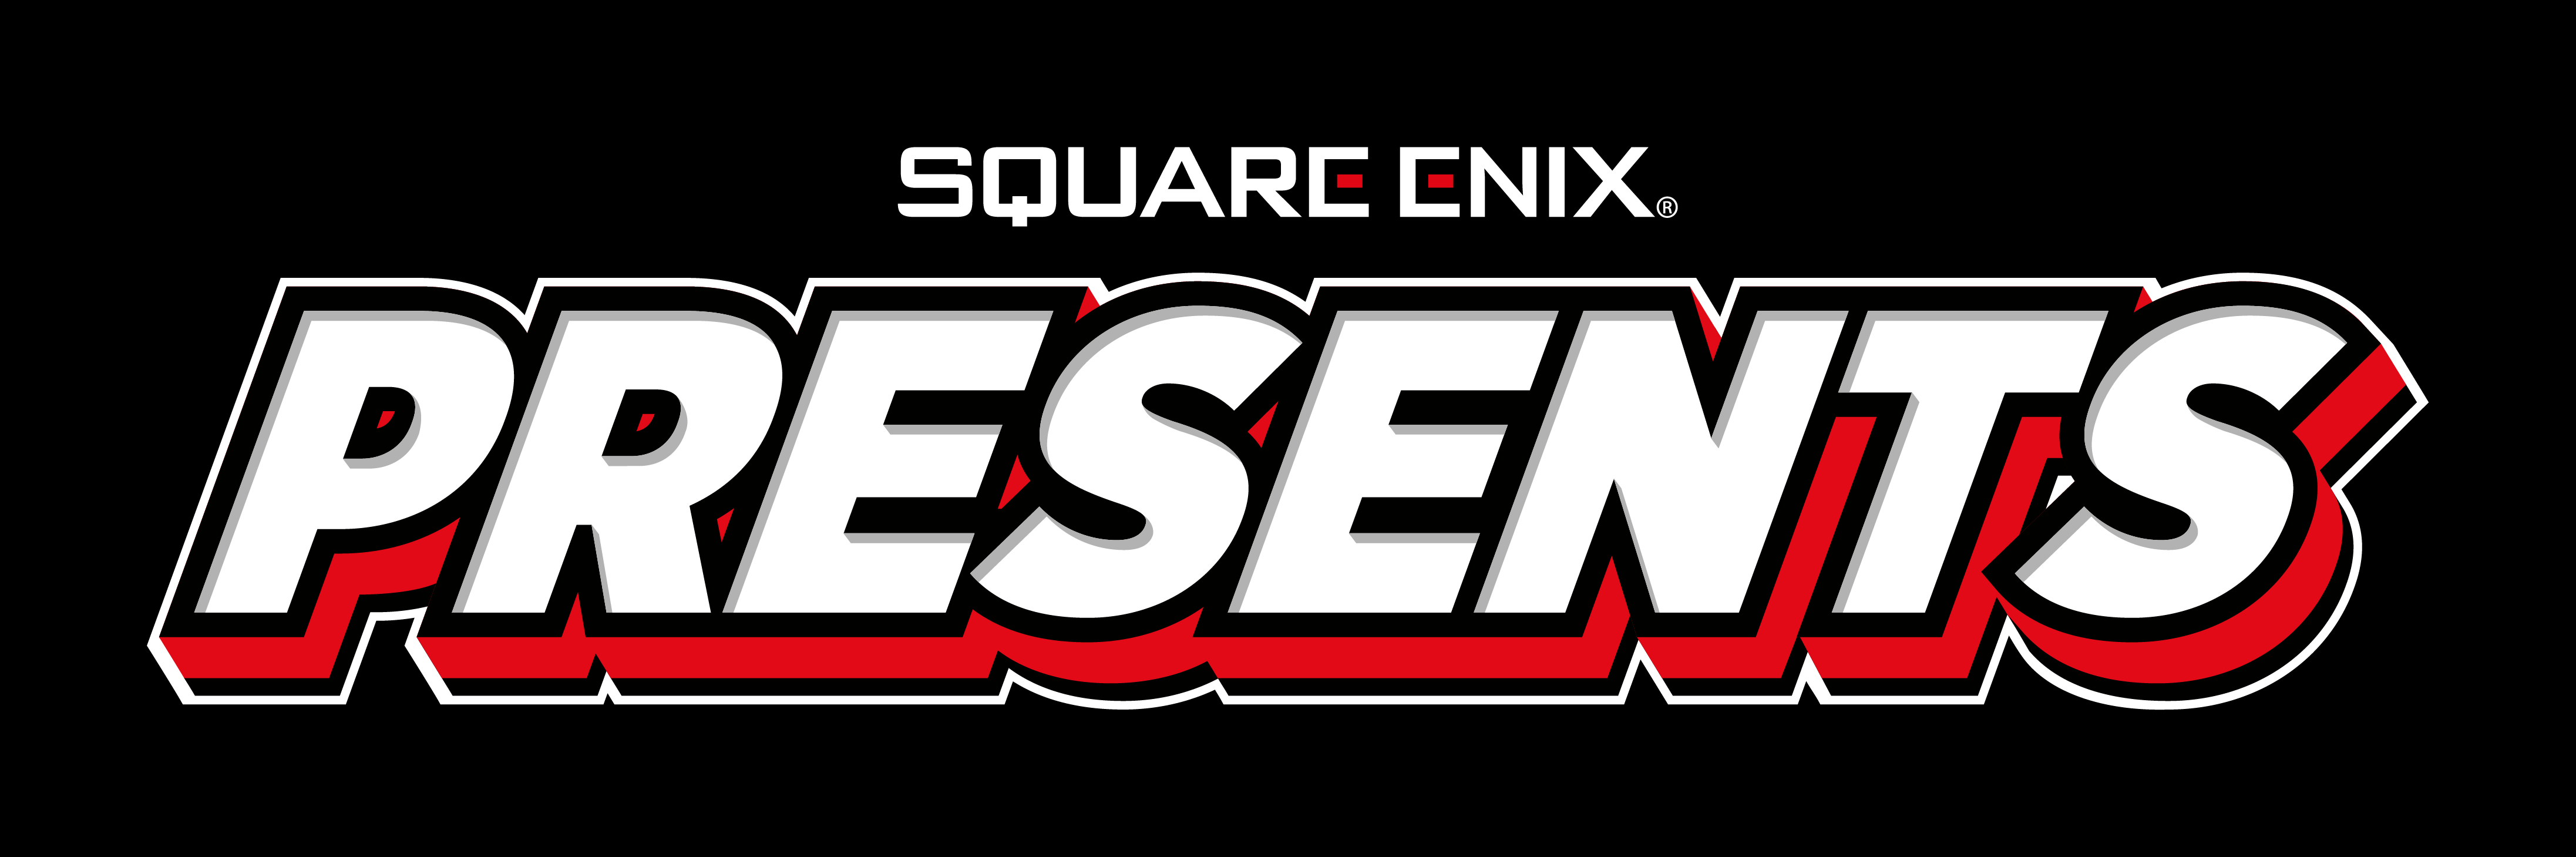 SQUARE ENIX anunció el estreno de un nuevo programa llamado SQUARE ENIX PRESENTS, una serie de vídeos en la que la compañía revelará nuevos juegos